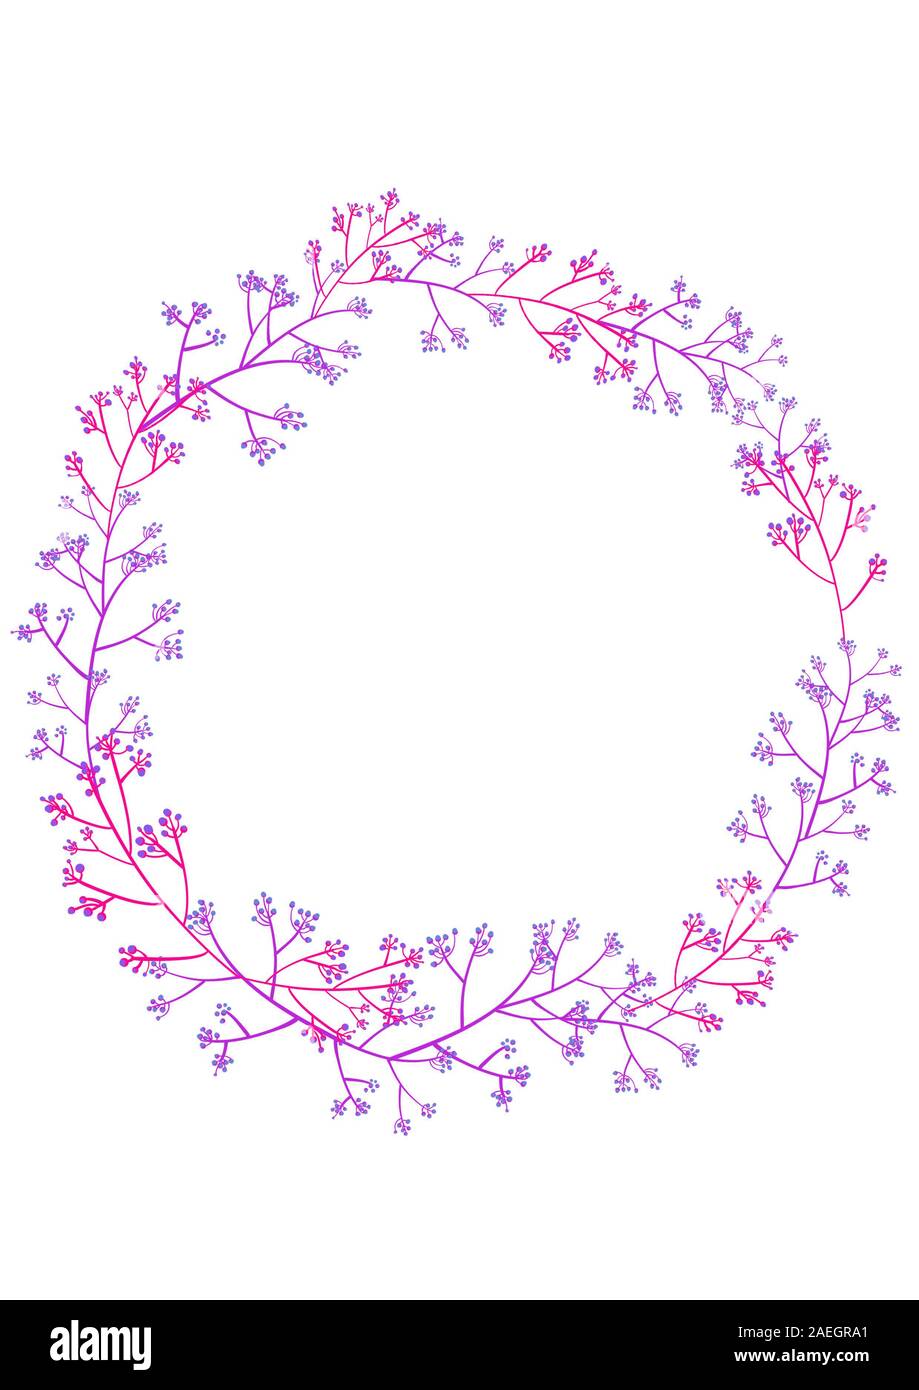 Wreath illustration : Họa tiết vòng hoa đầy cảm hứng với sắc tím than nhẹ nhàng sẽ mang đến cho bạn cảm giác thư giãn và yên bình. Hãy khám phá các mẫu họa tiết vòng hoa đầy tinh tế và sắc màu này để bổ sung cho các thiết kế của bạn.